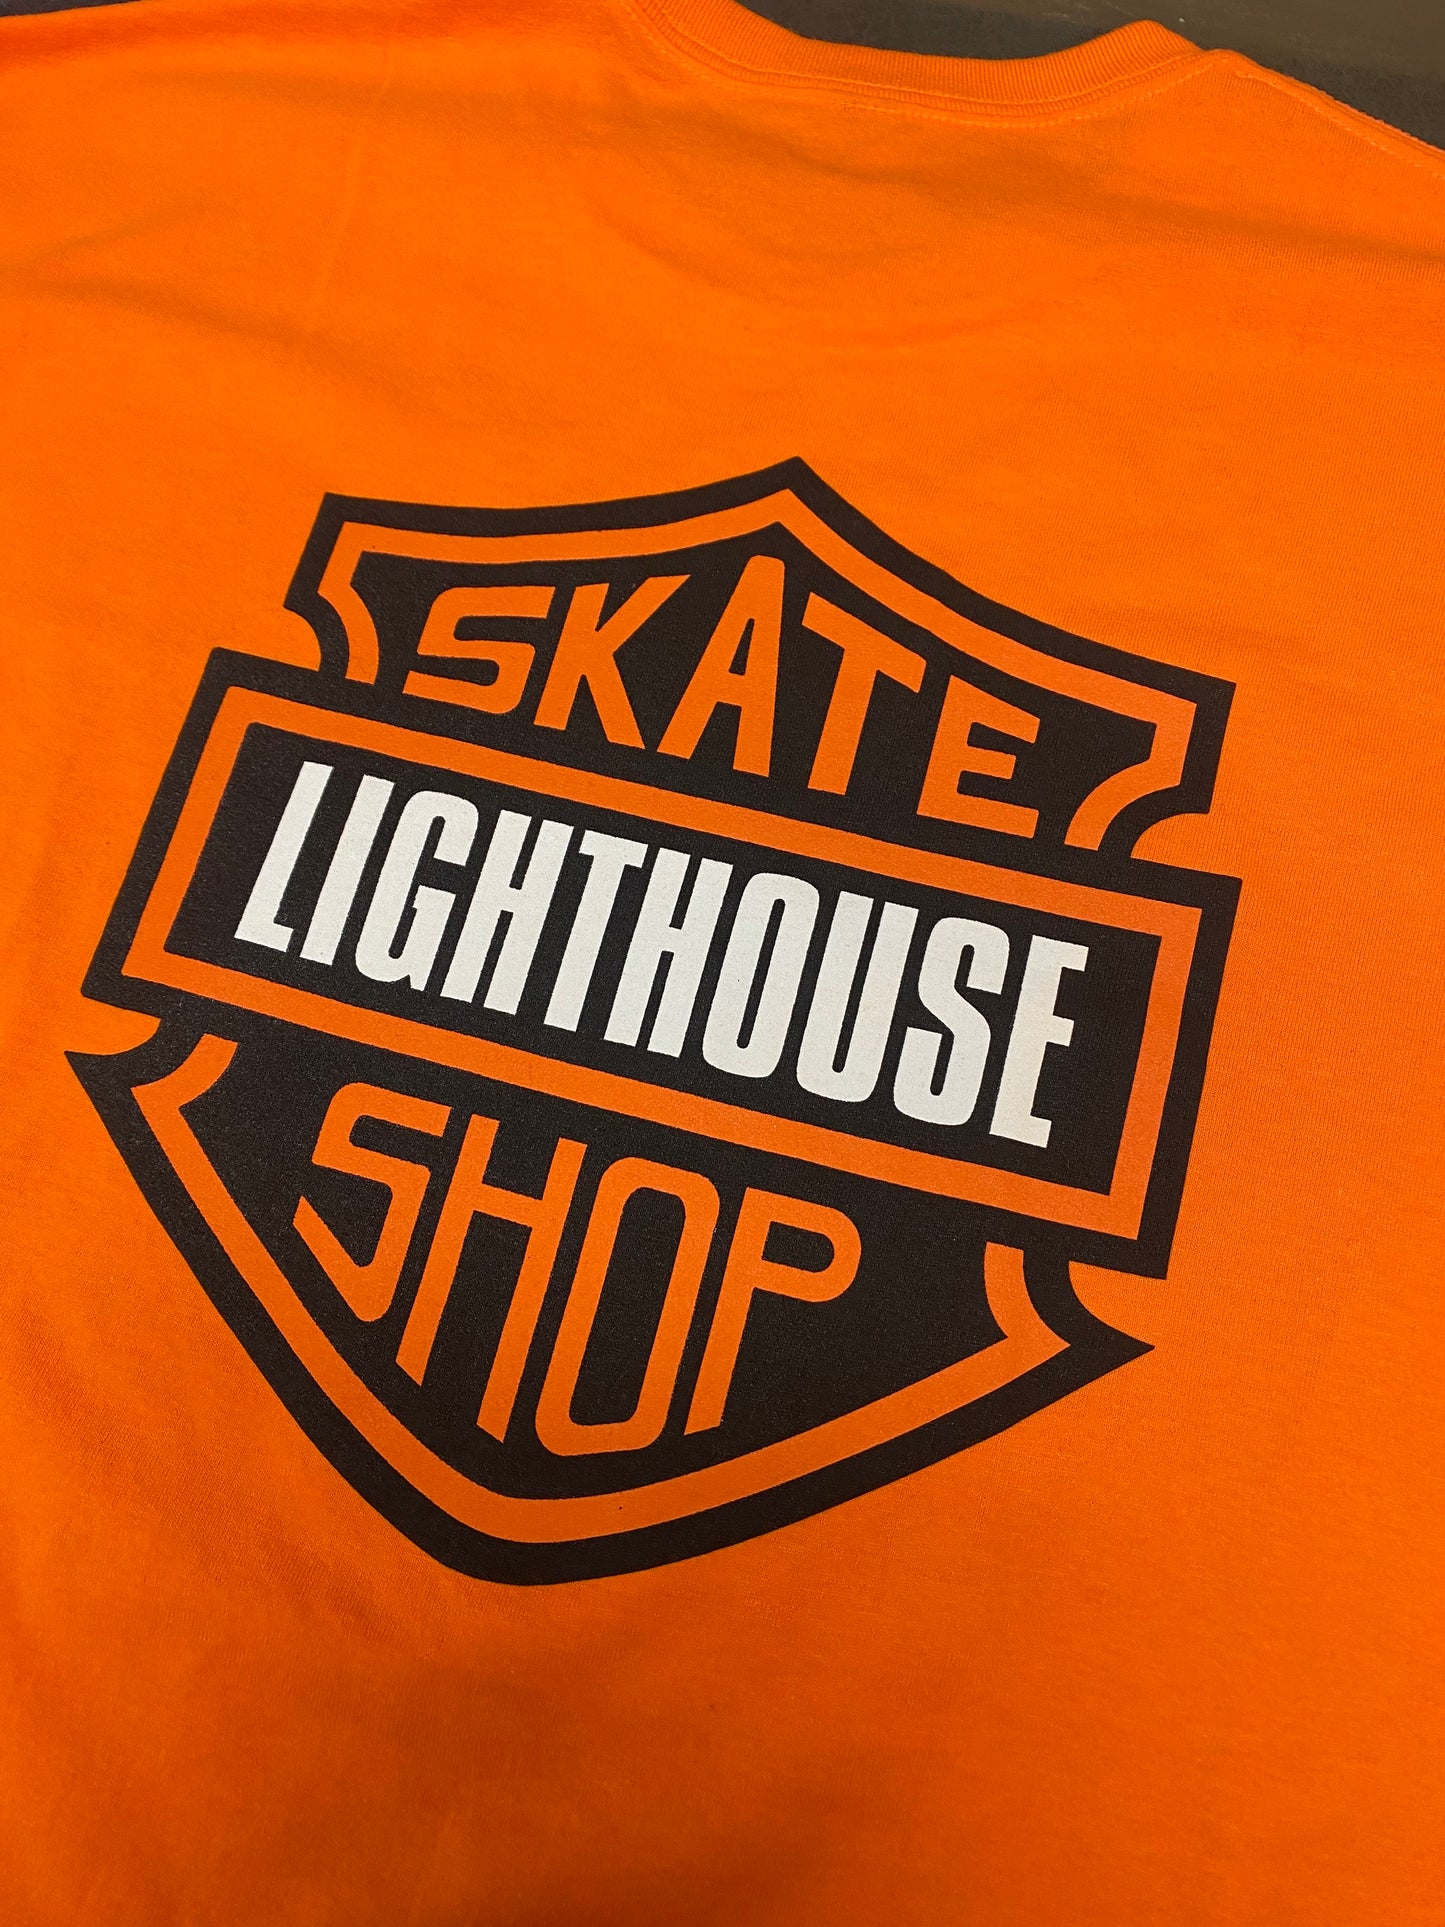 Lighthouse HD T-Shirt